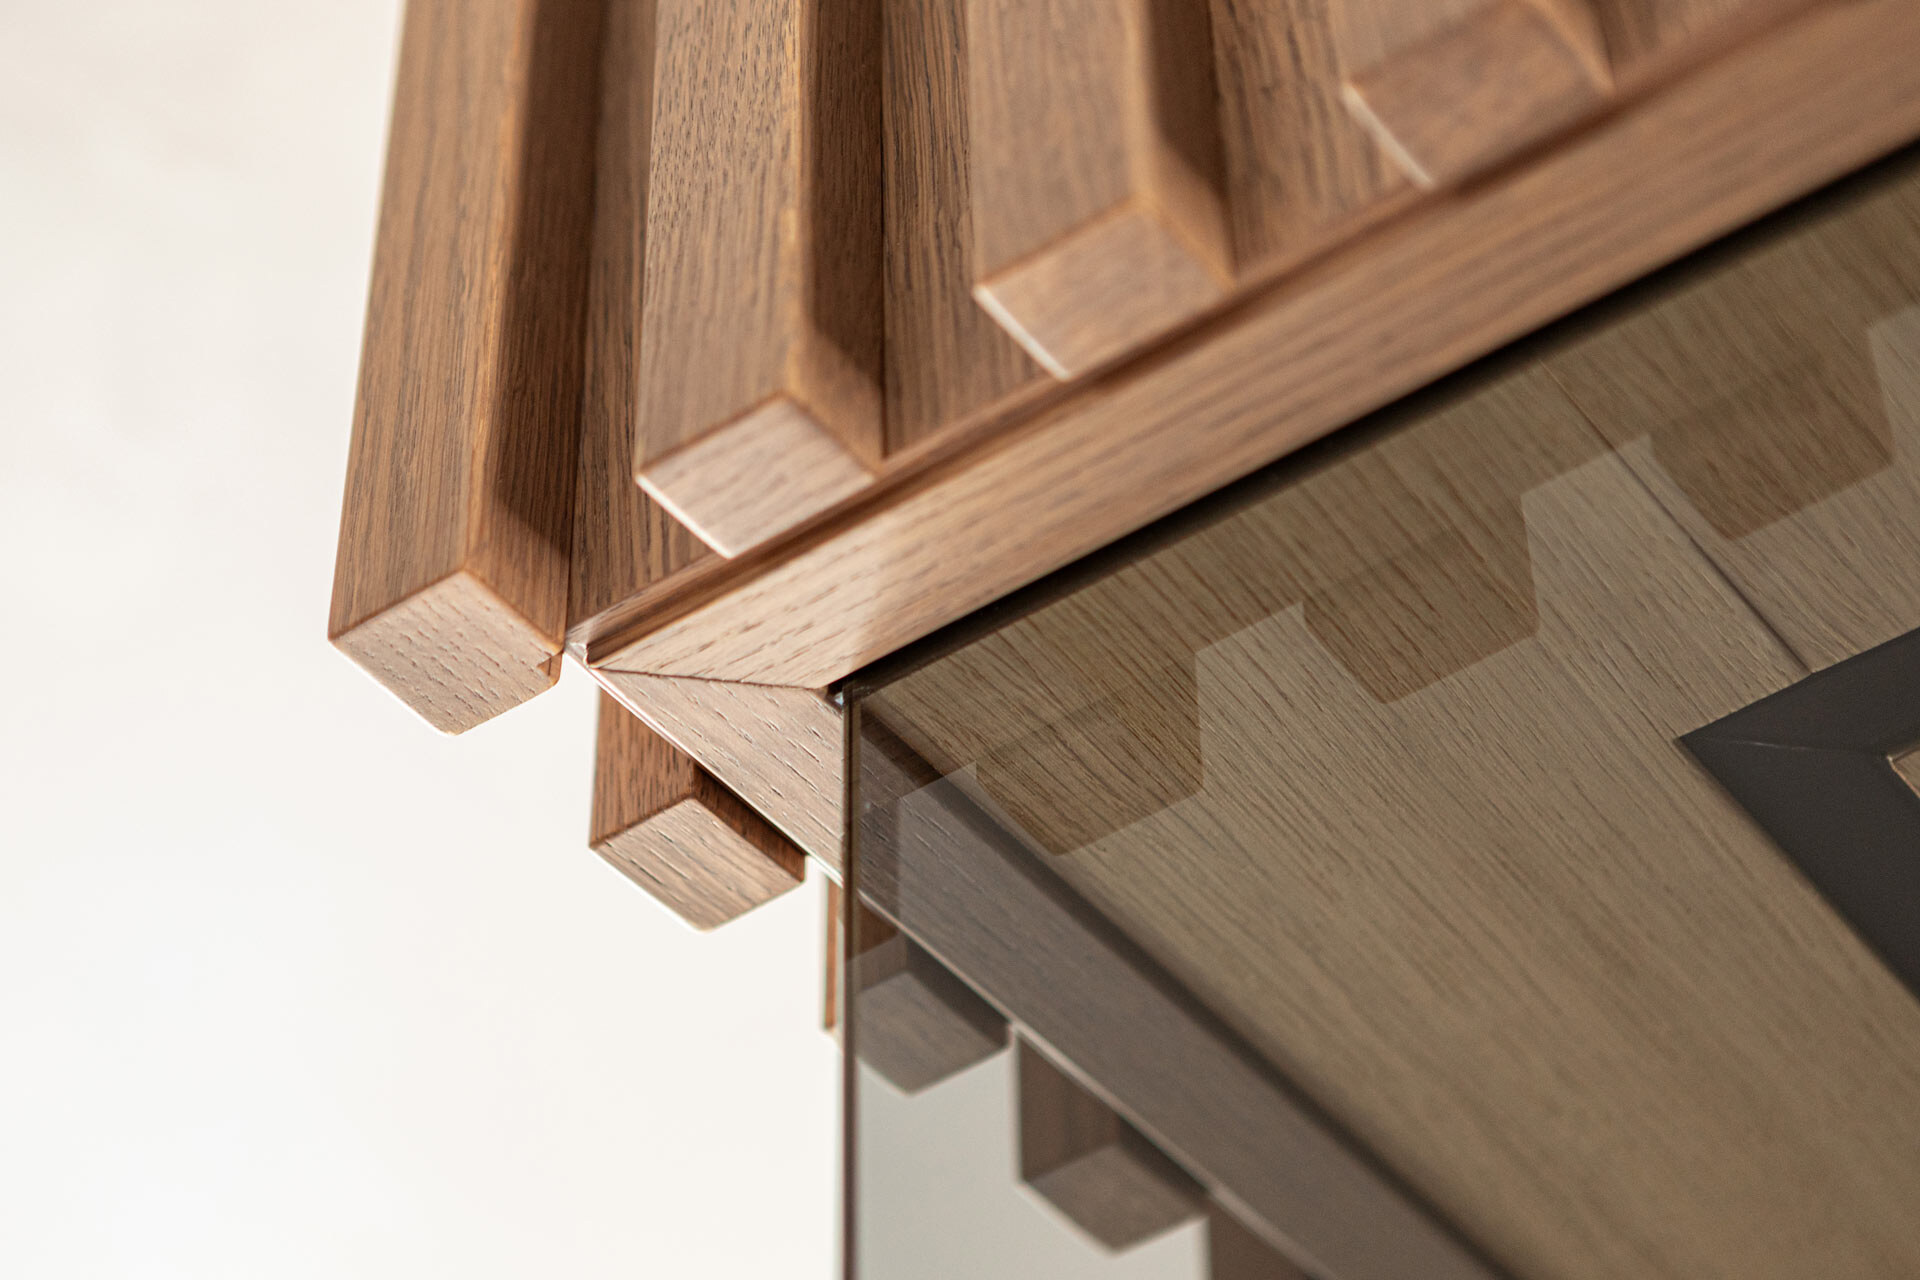 Detaillösung der Saunaverkleidung aus Profilholz mit Anschluss zur Glasfront.